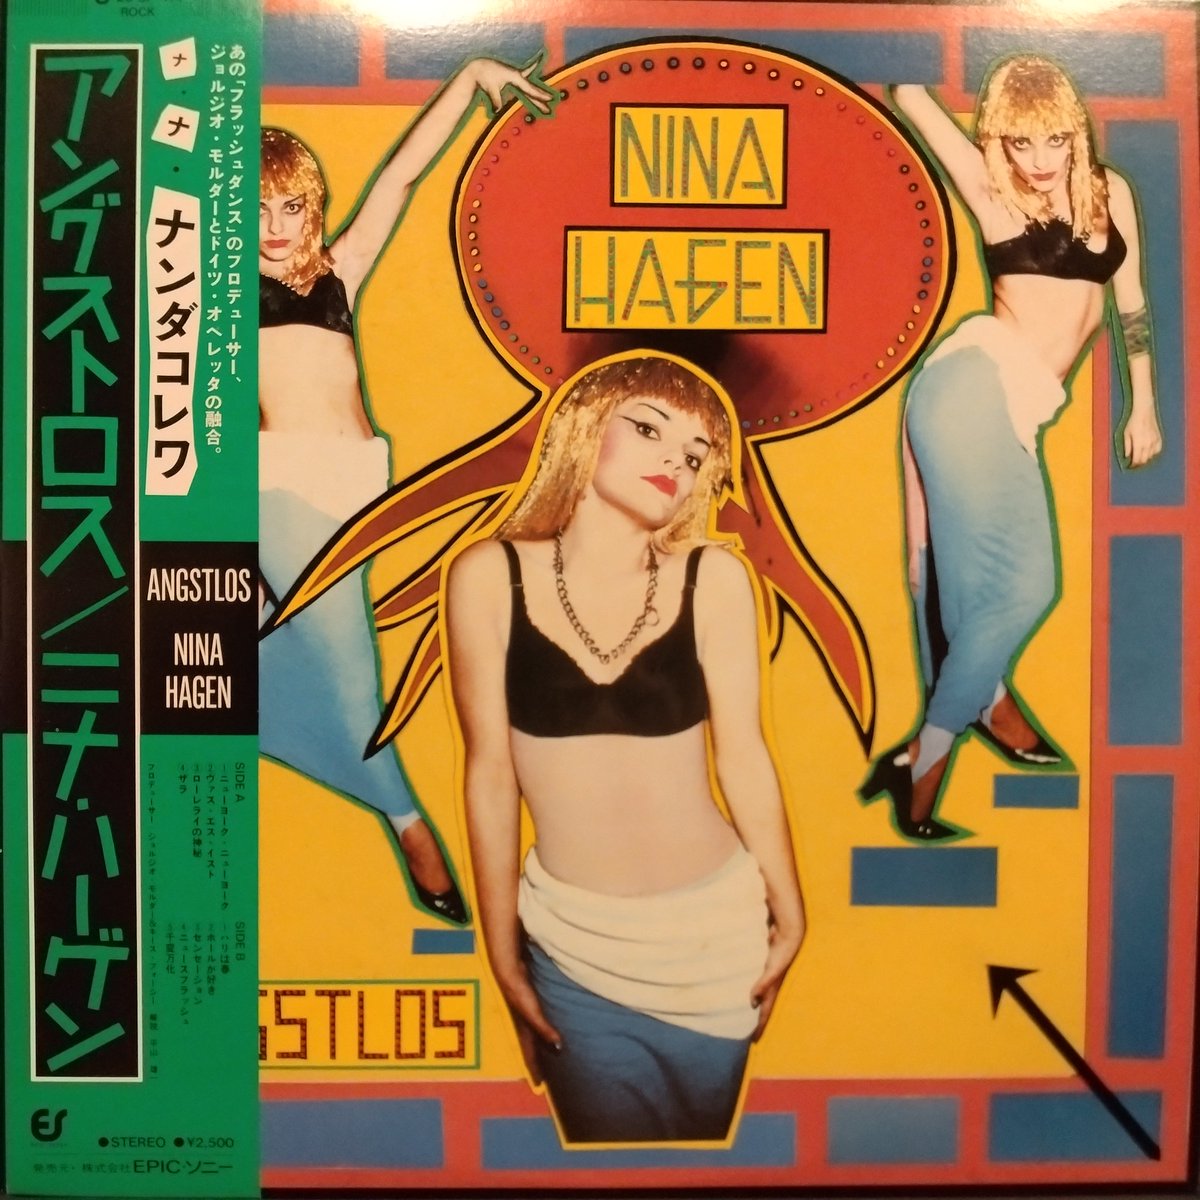 #NowPlaying
#ニナハーゲン #ninahagen 
アングストロス
【帯記述】あの「フラッシュ・ダンス」のプロデューサー、ジョルジオ・モルダーとドイツ・オペレッタの融合。

#西成区　#レコードバー　#アナログレコード　#大阪レコードバー